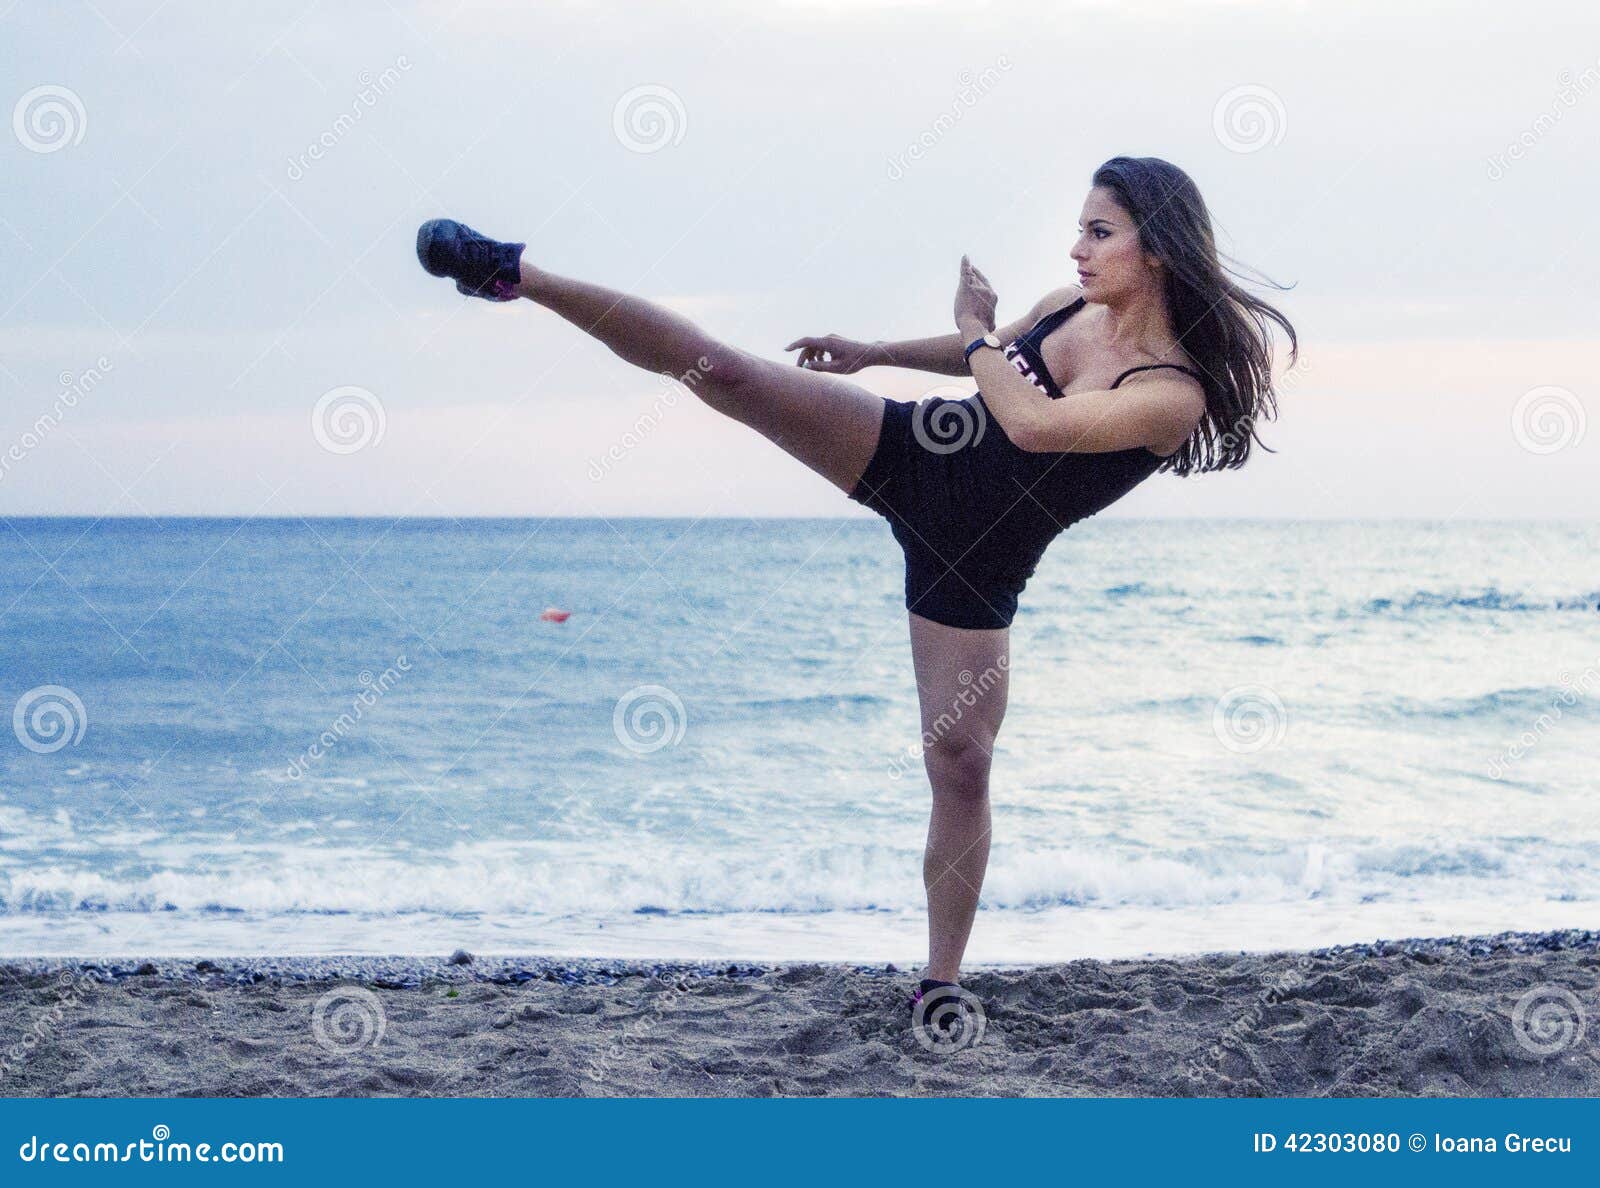 powerful woman performing martial arts kick